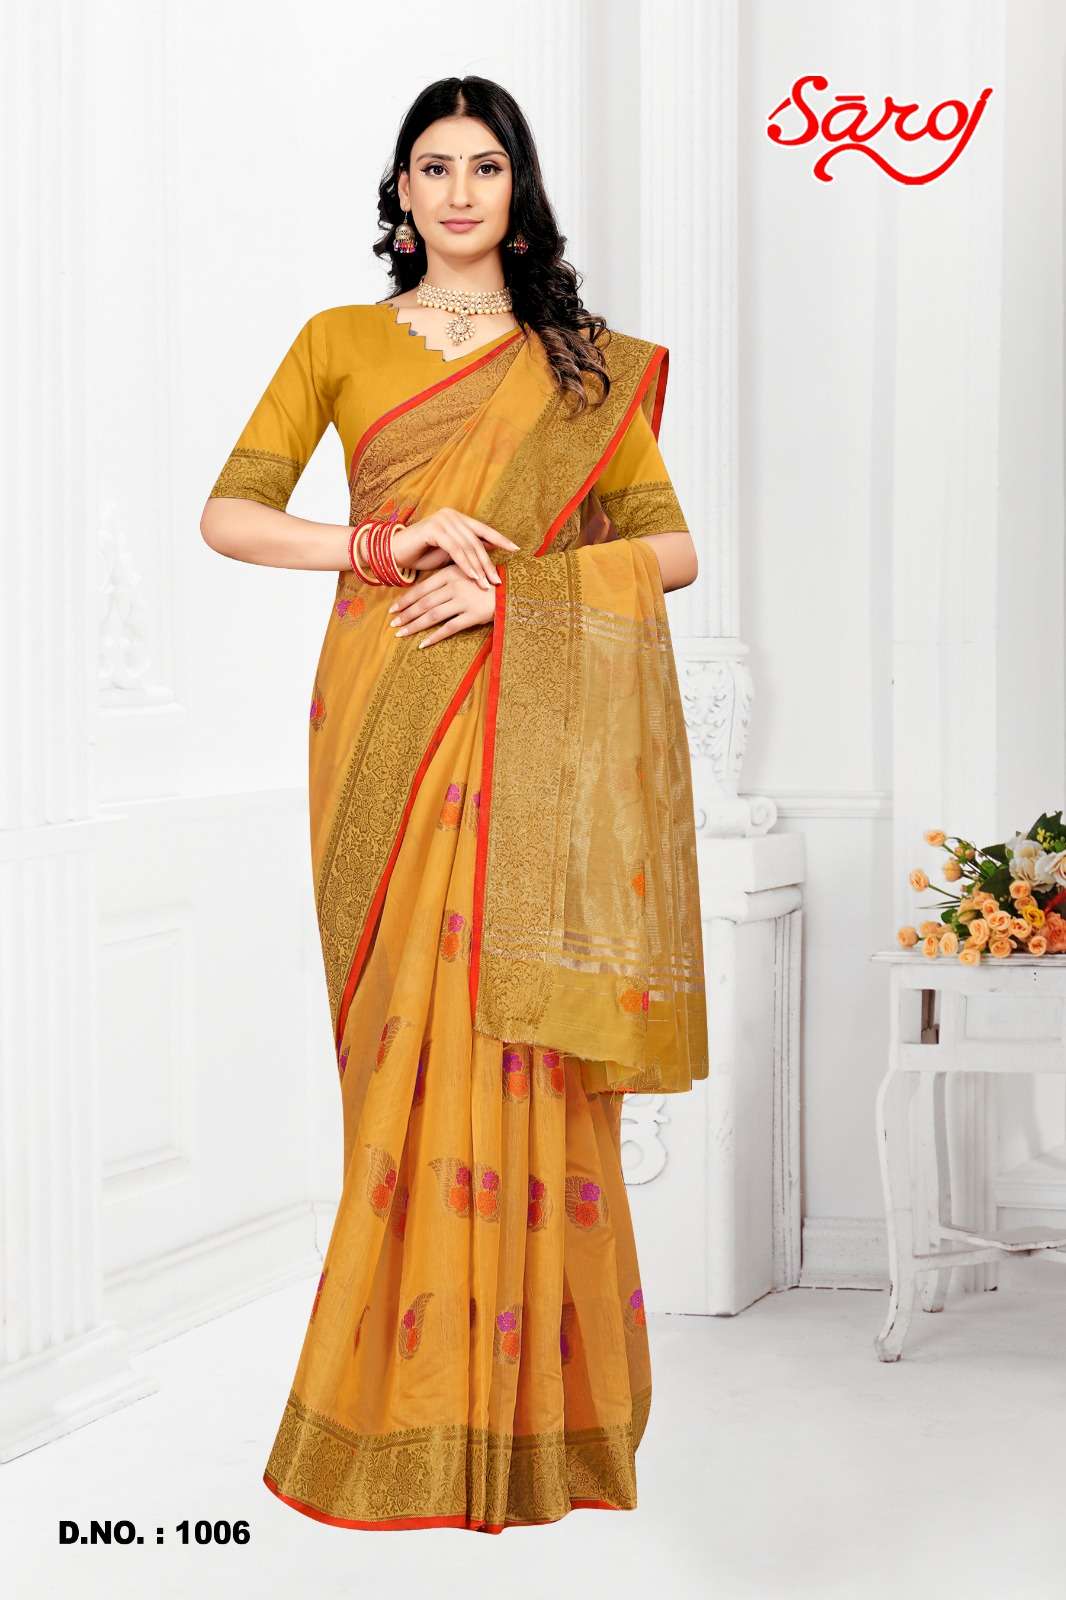 Saroj textile presents Shandaar vol-2 Cotton Designer sarees catalogue